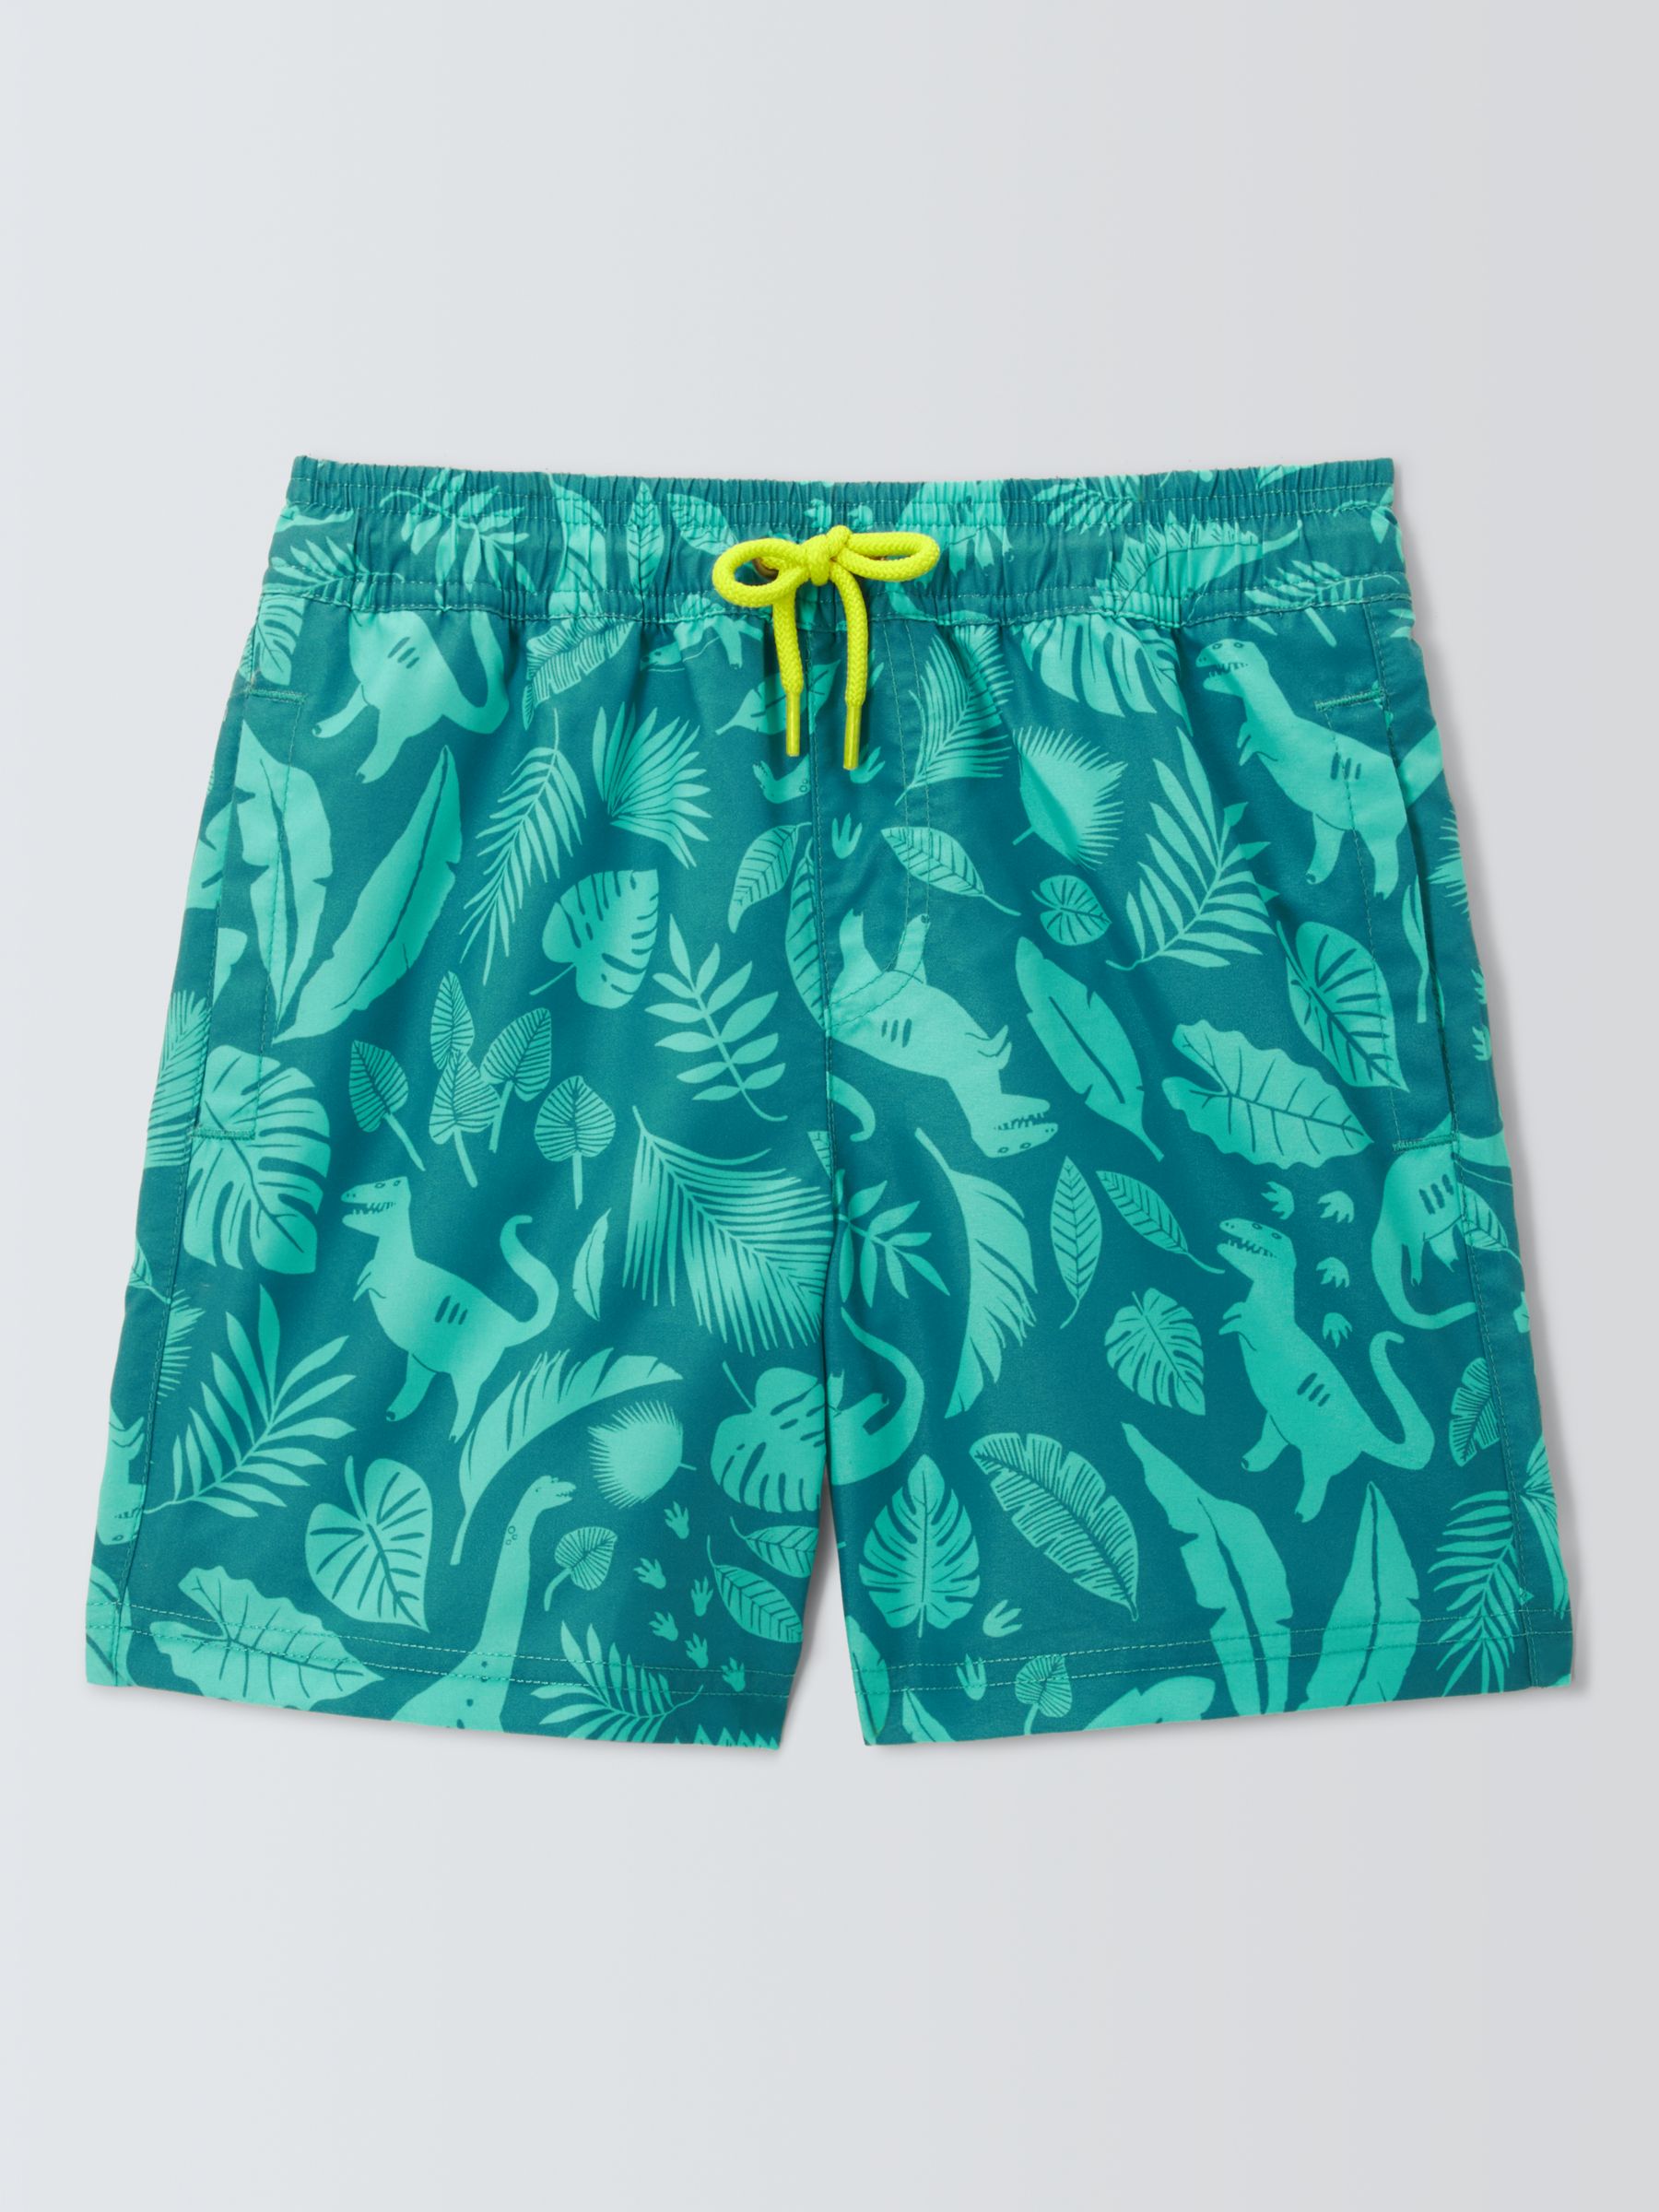 John Lewis Kids' Dino Print Swim Shorts, Green, 8 years